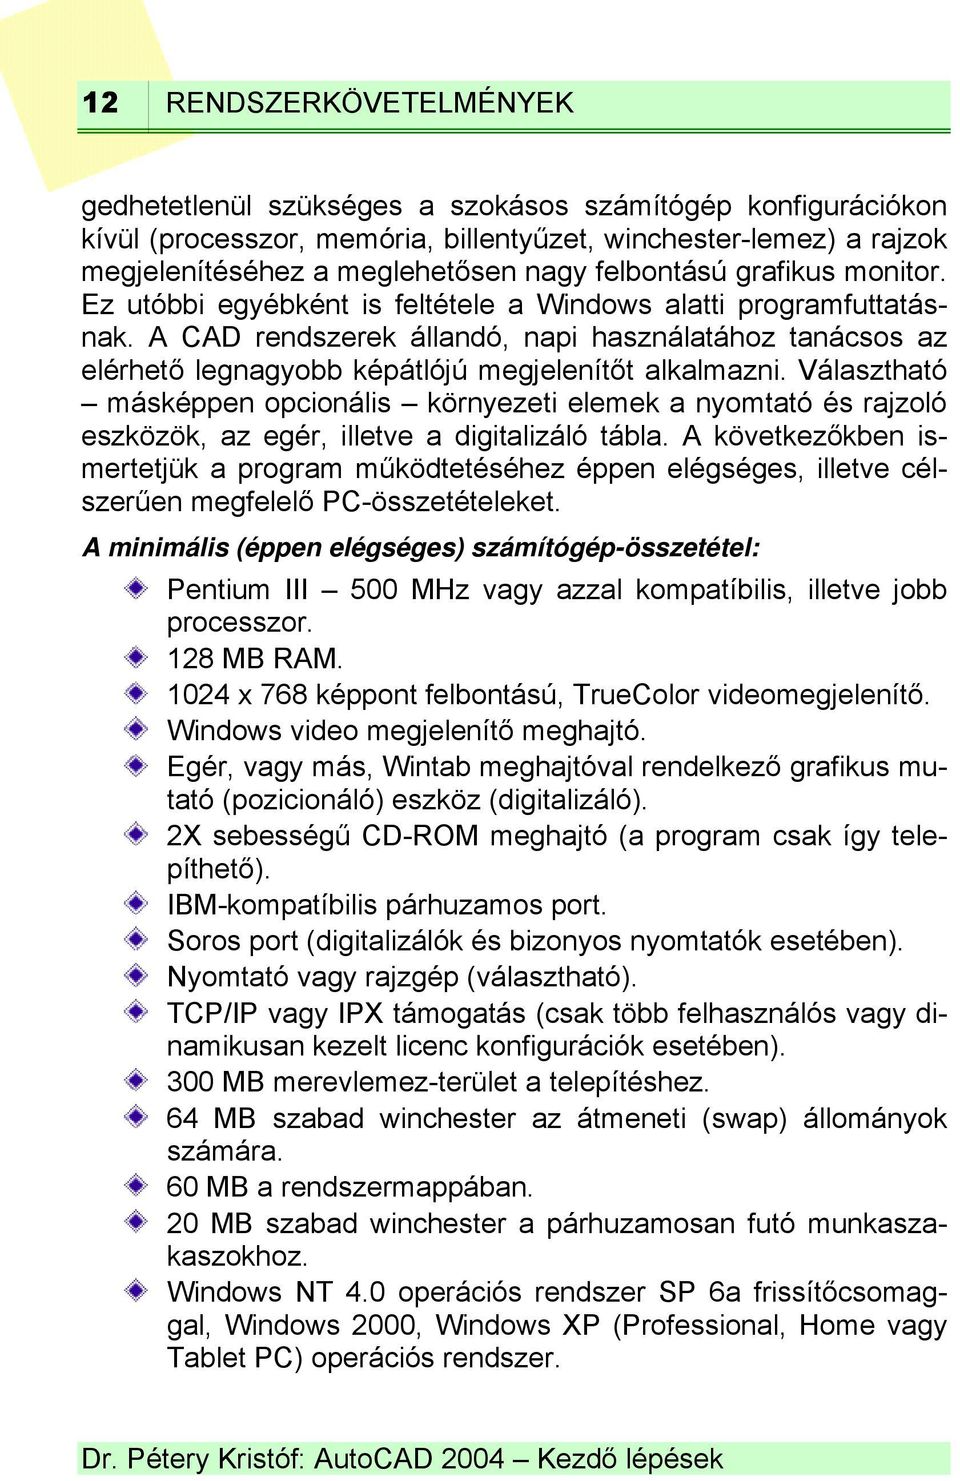 Dr. Pétery Kristóf: AutoCAD 2004 Kezdő lépések - PDF Ingyenes letöltés